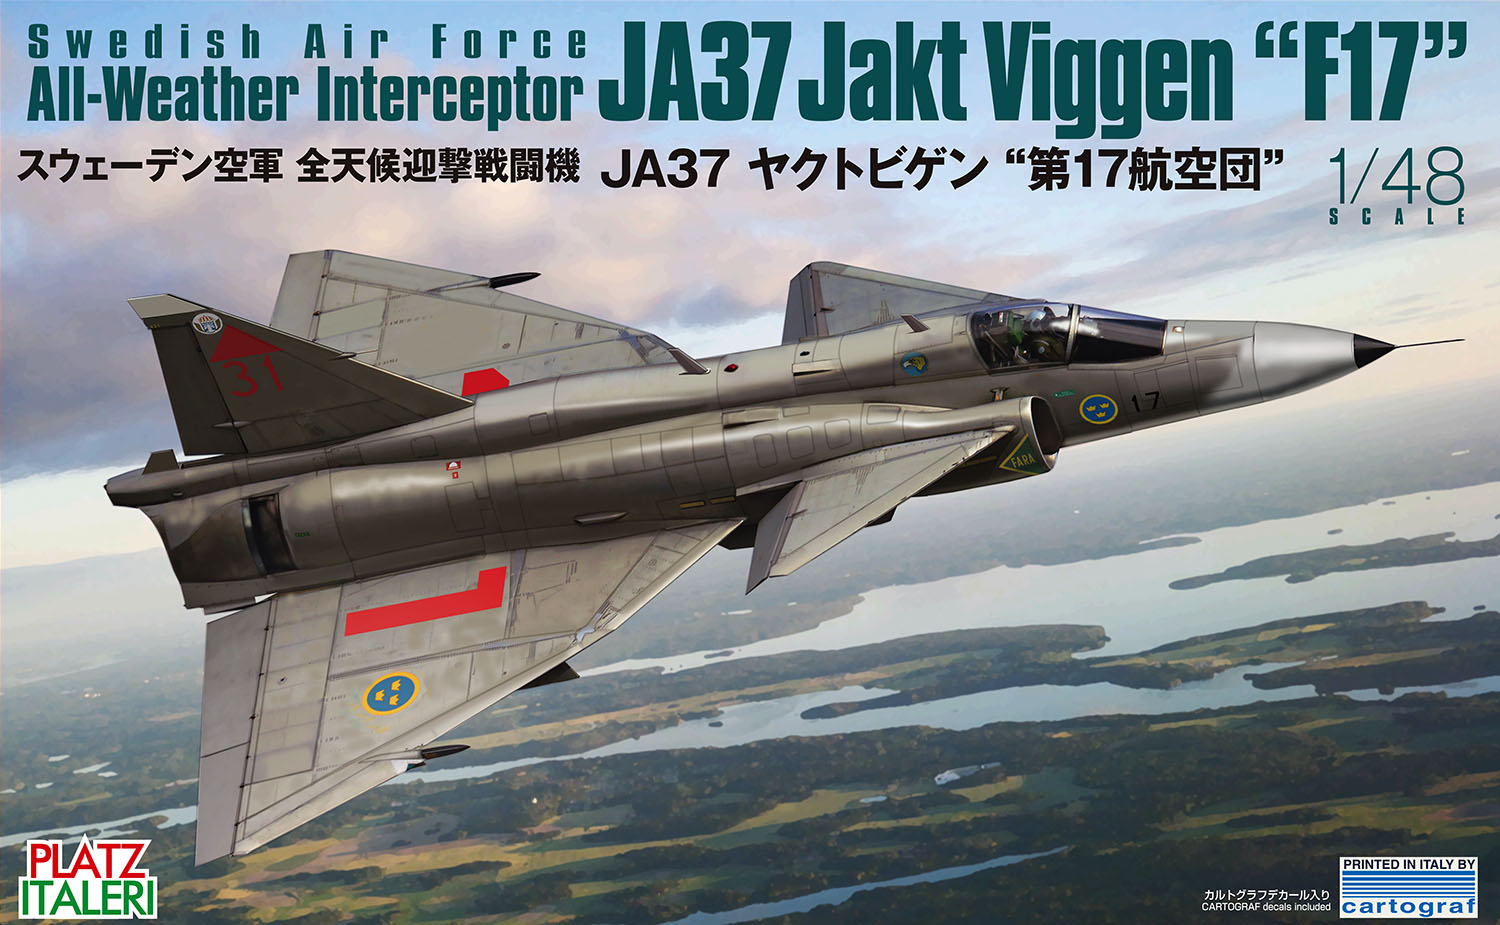 TPA-15 プラッツ 1/48 スウェーデン空軍 全天候迎撃戦闘機 JA37 ヤクトビゲン `第17航空団`